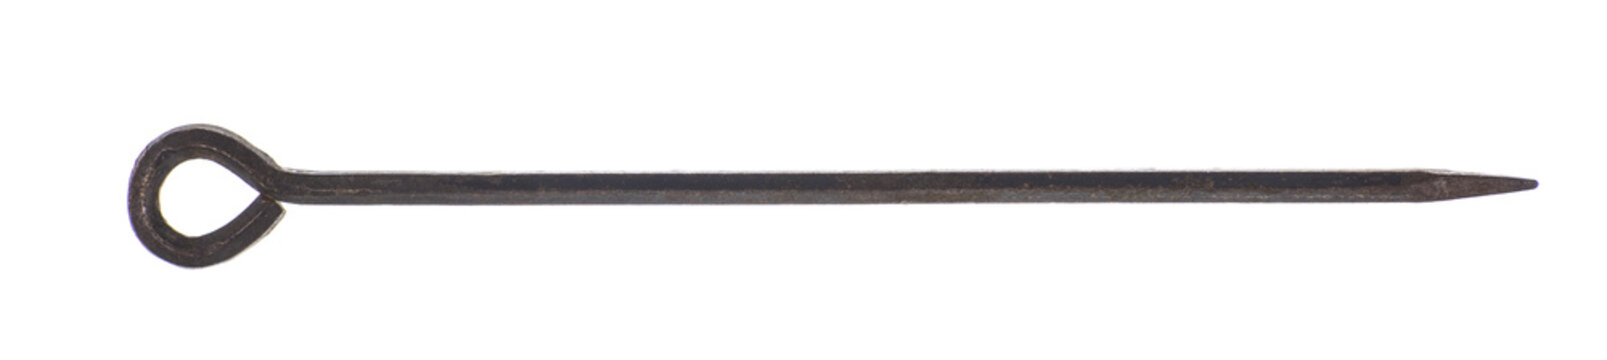 sharp iron stick isolated on white background